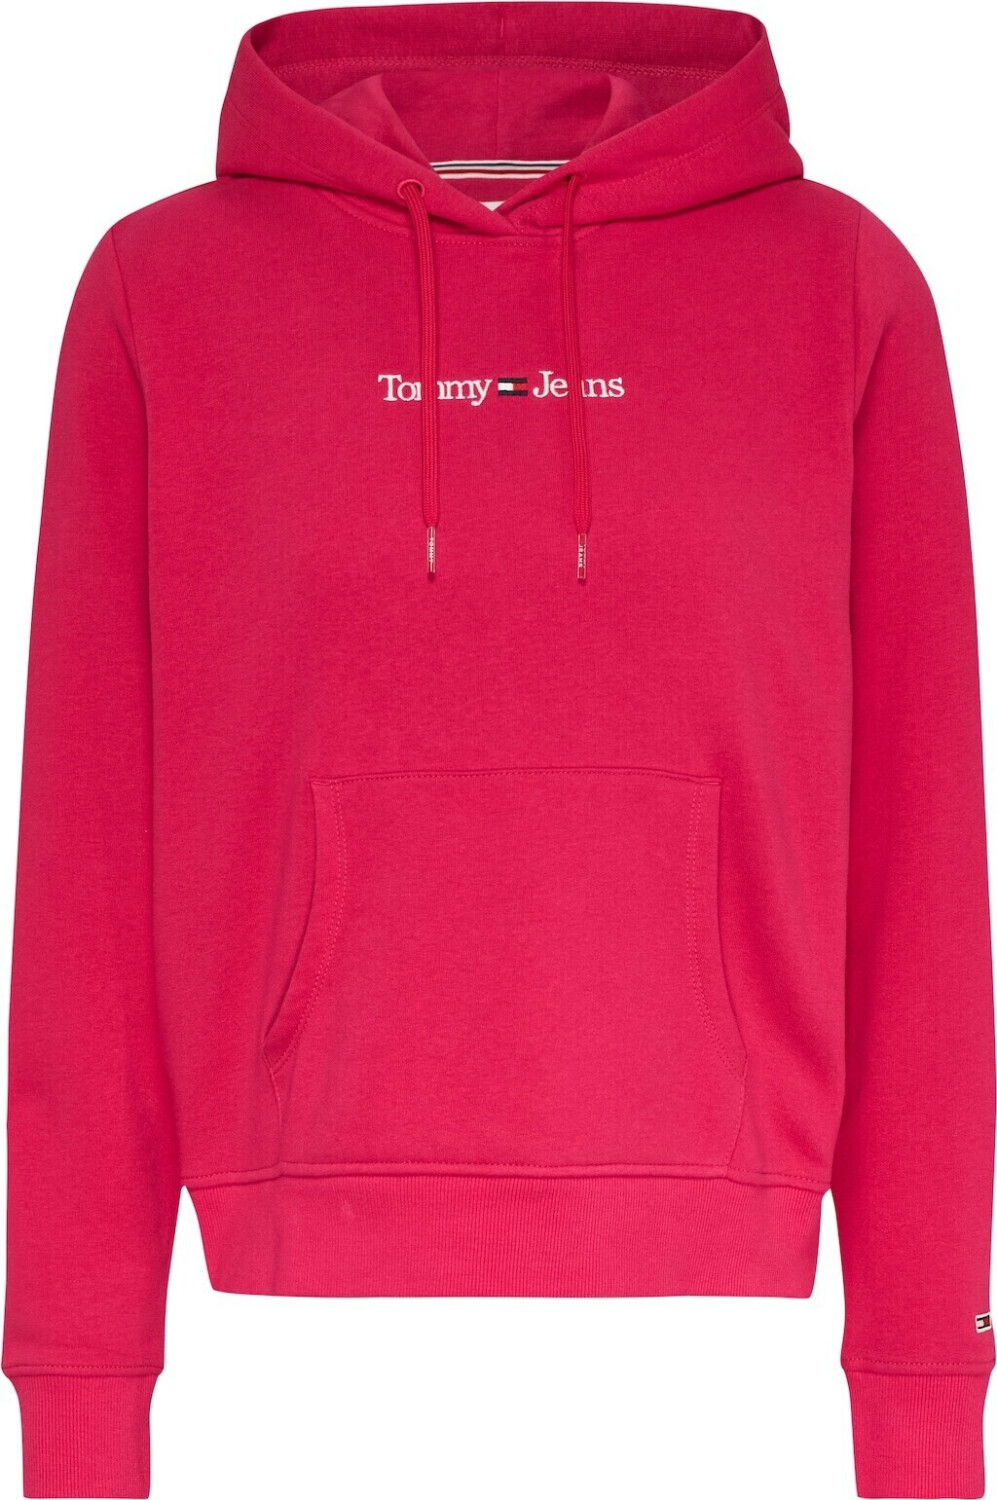 Tommy Hilfiger Sweatshirt Serif (DW0DW15649) gypsy rose ab € 69,99 |  Preisvergleich bei